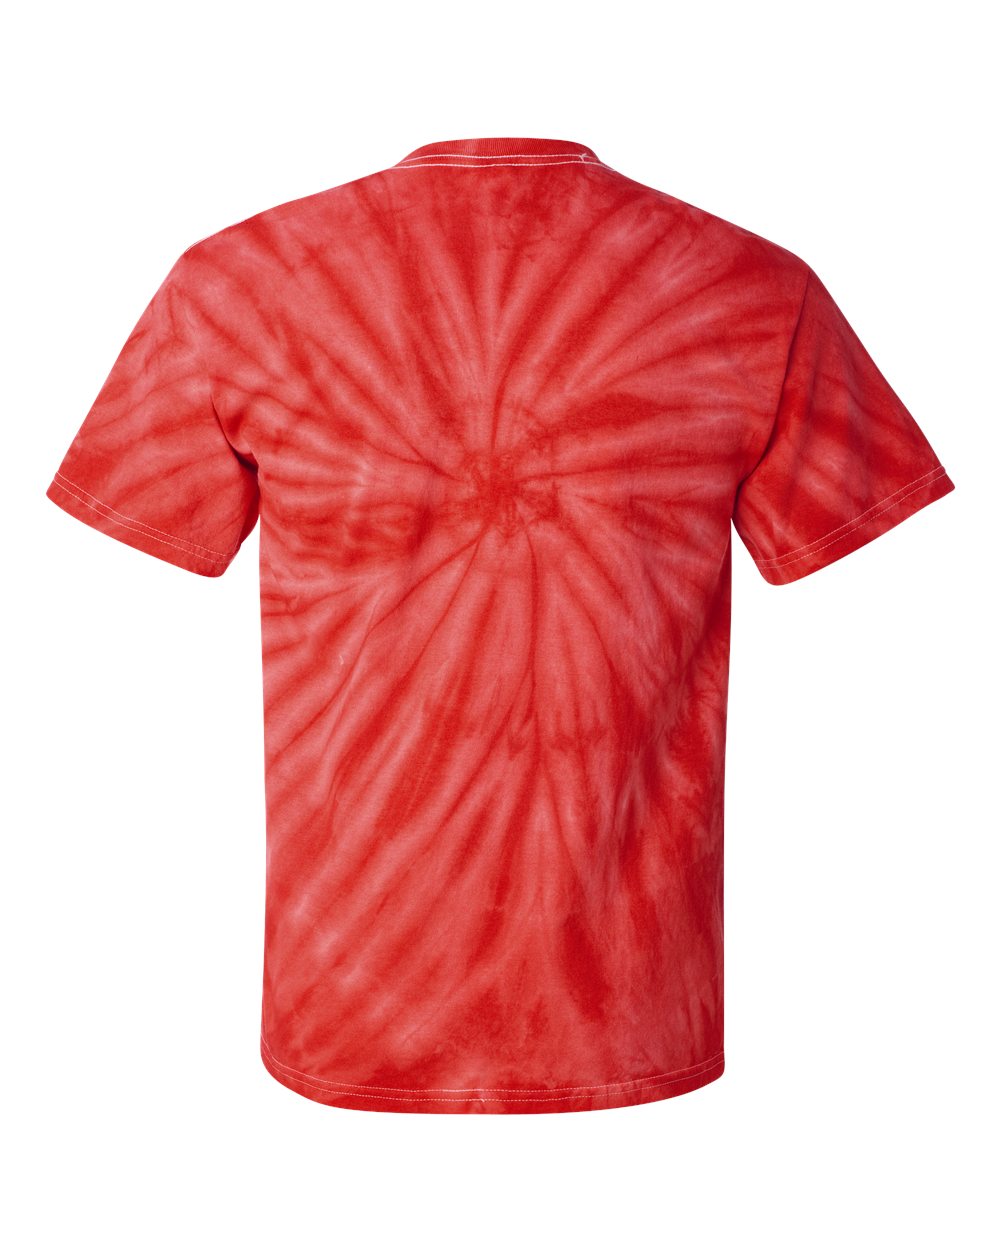 Espiral Dye - Rojo